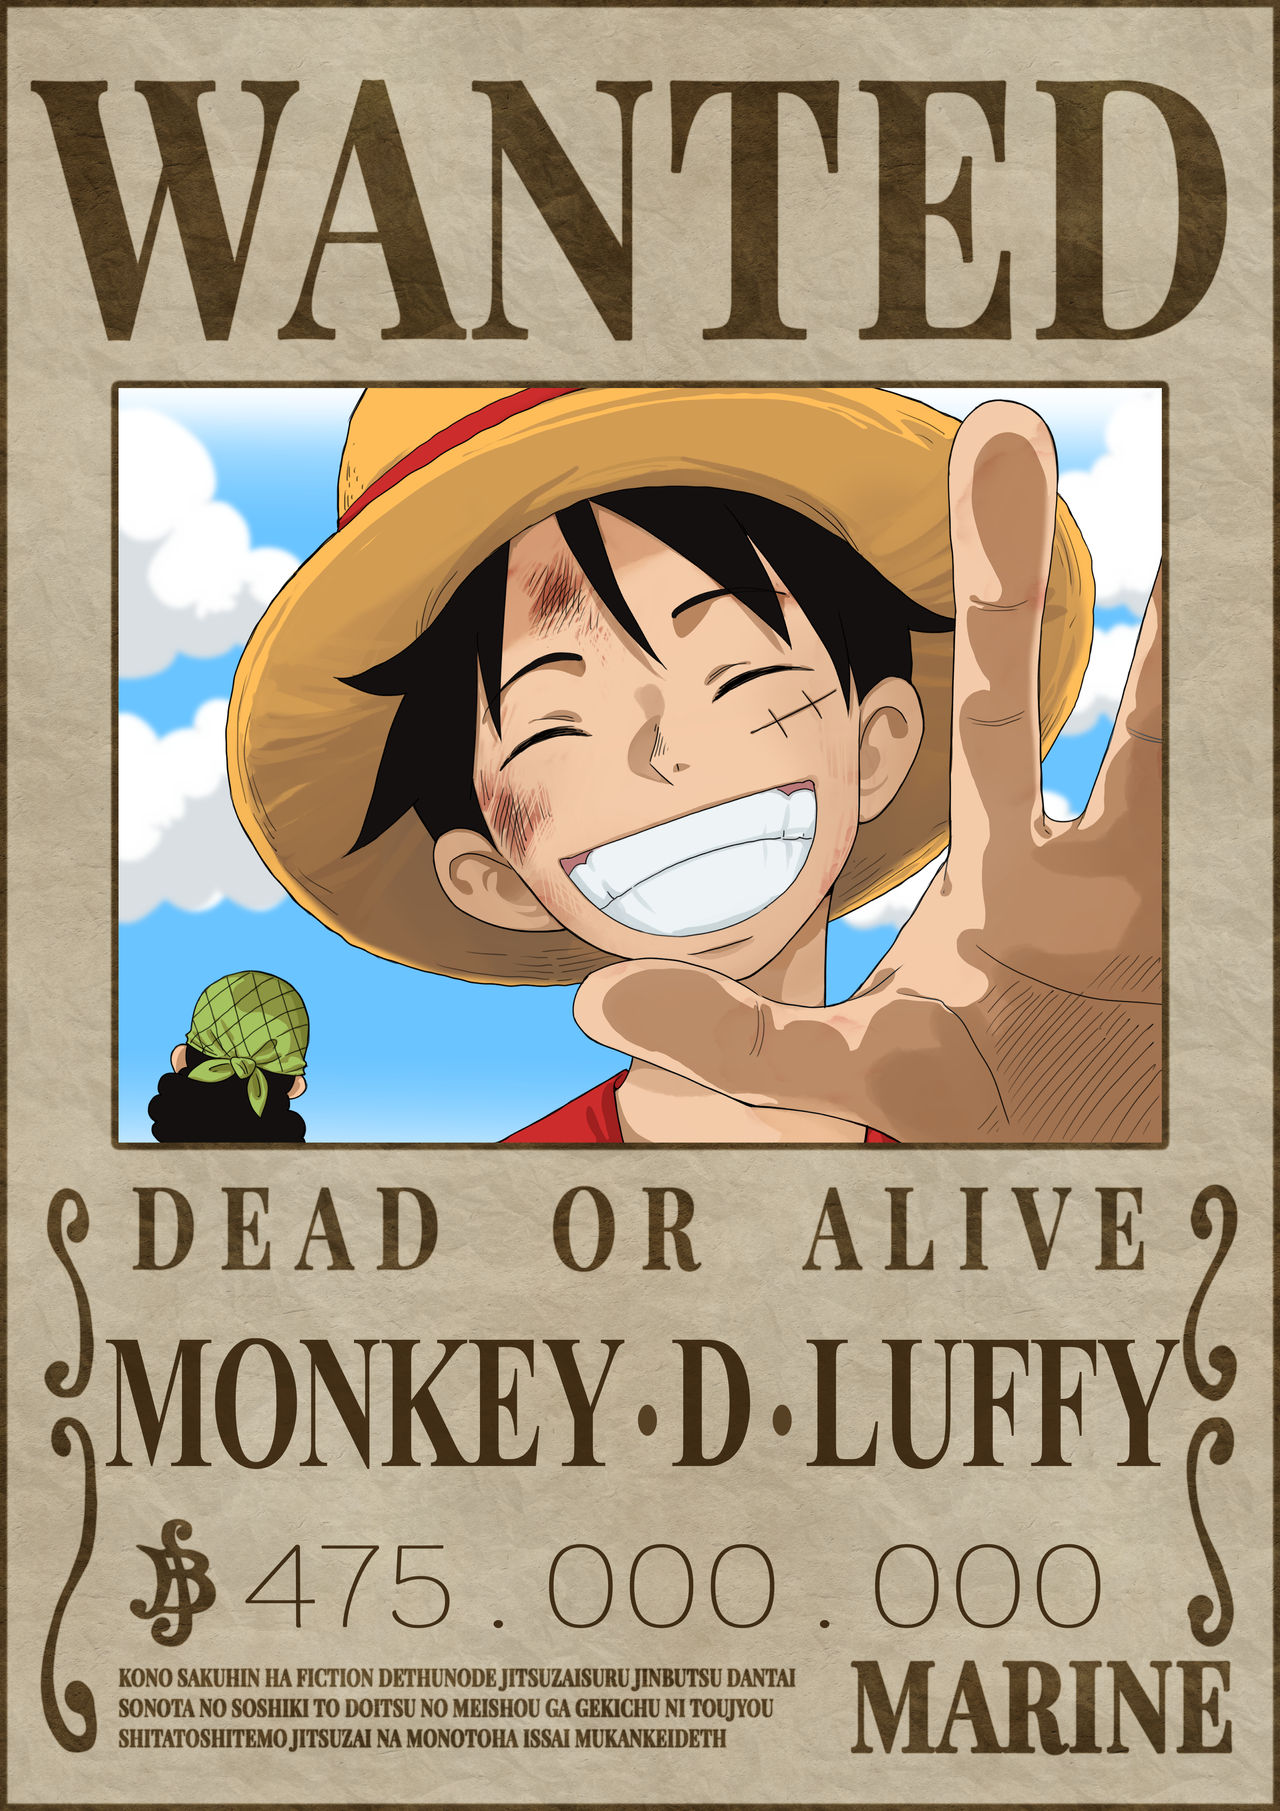 Old Monkey D Luffy - Nika - Gear 5 by caiquenadal on DeviantArt